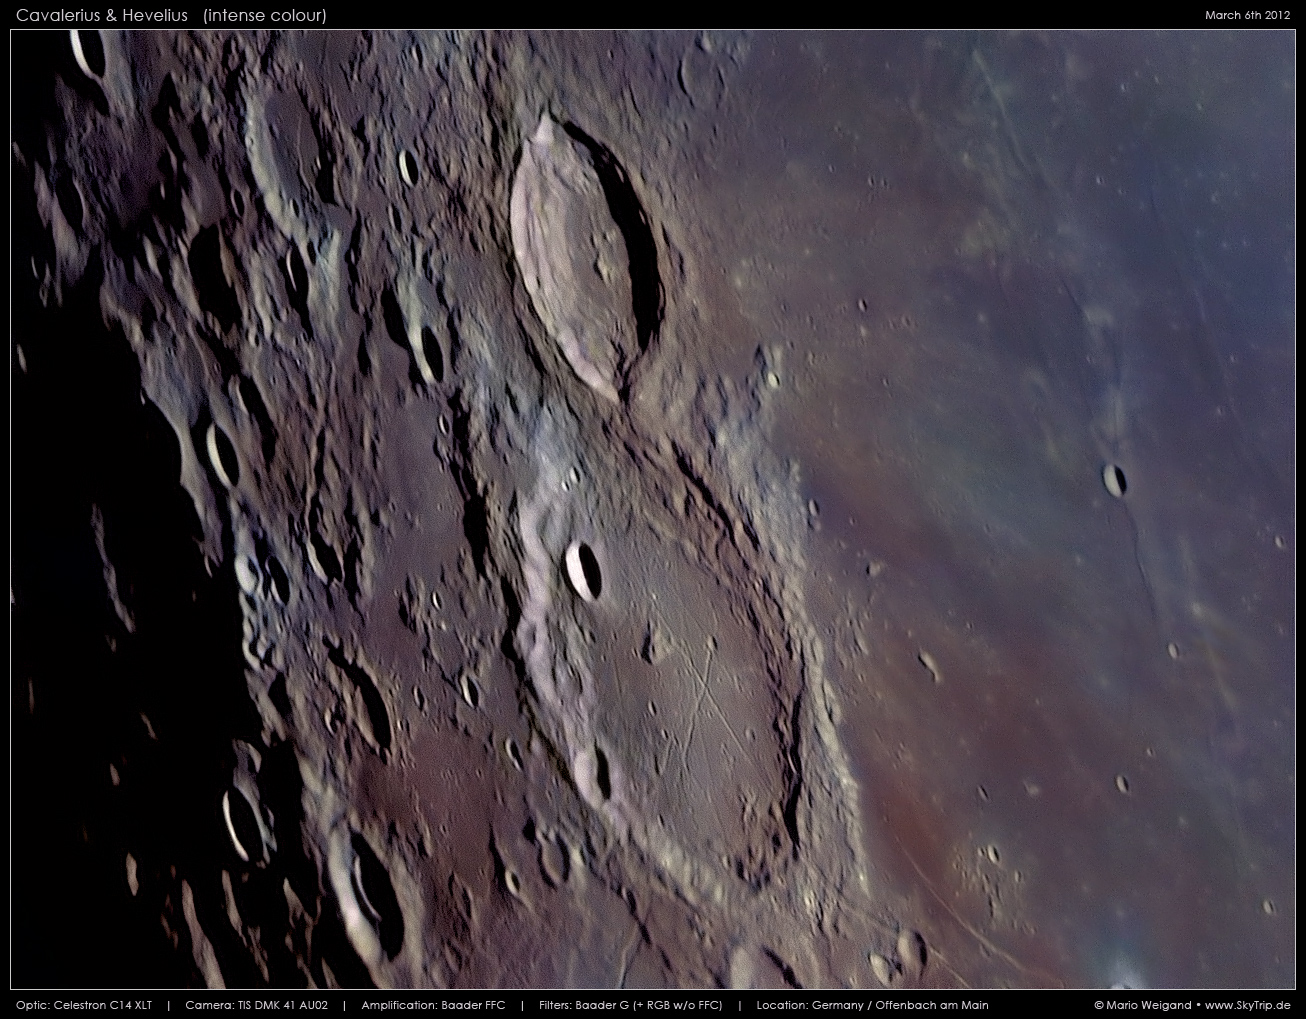 Mondfoto: Cavalerius & Hevelius mit verstrkten Farben